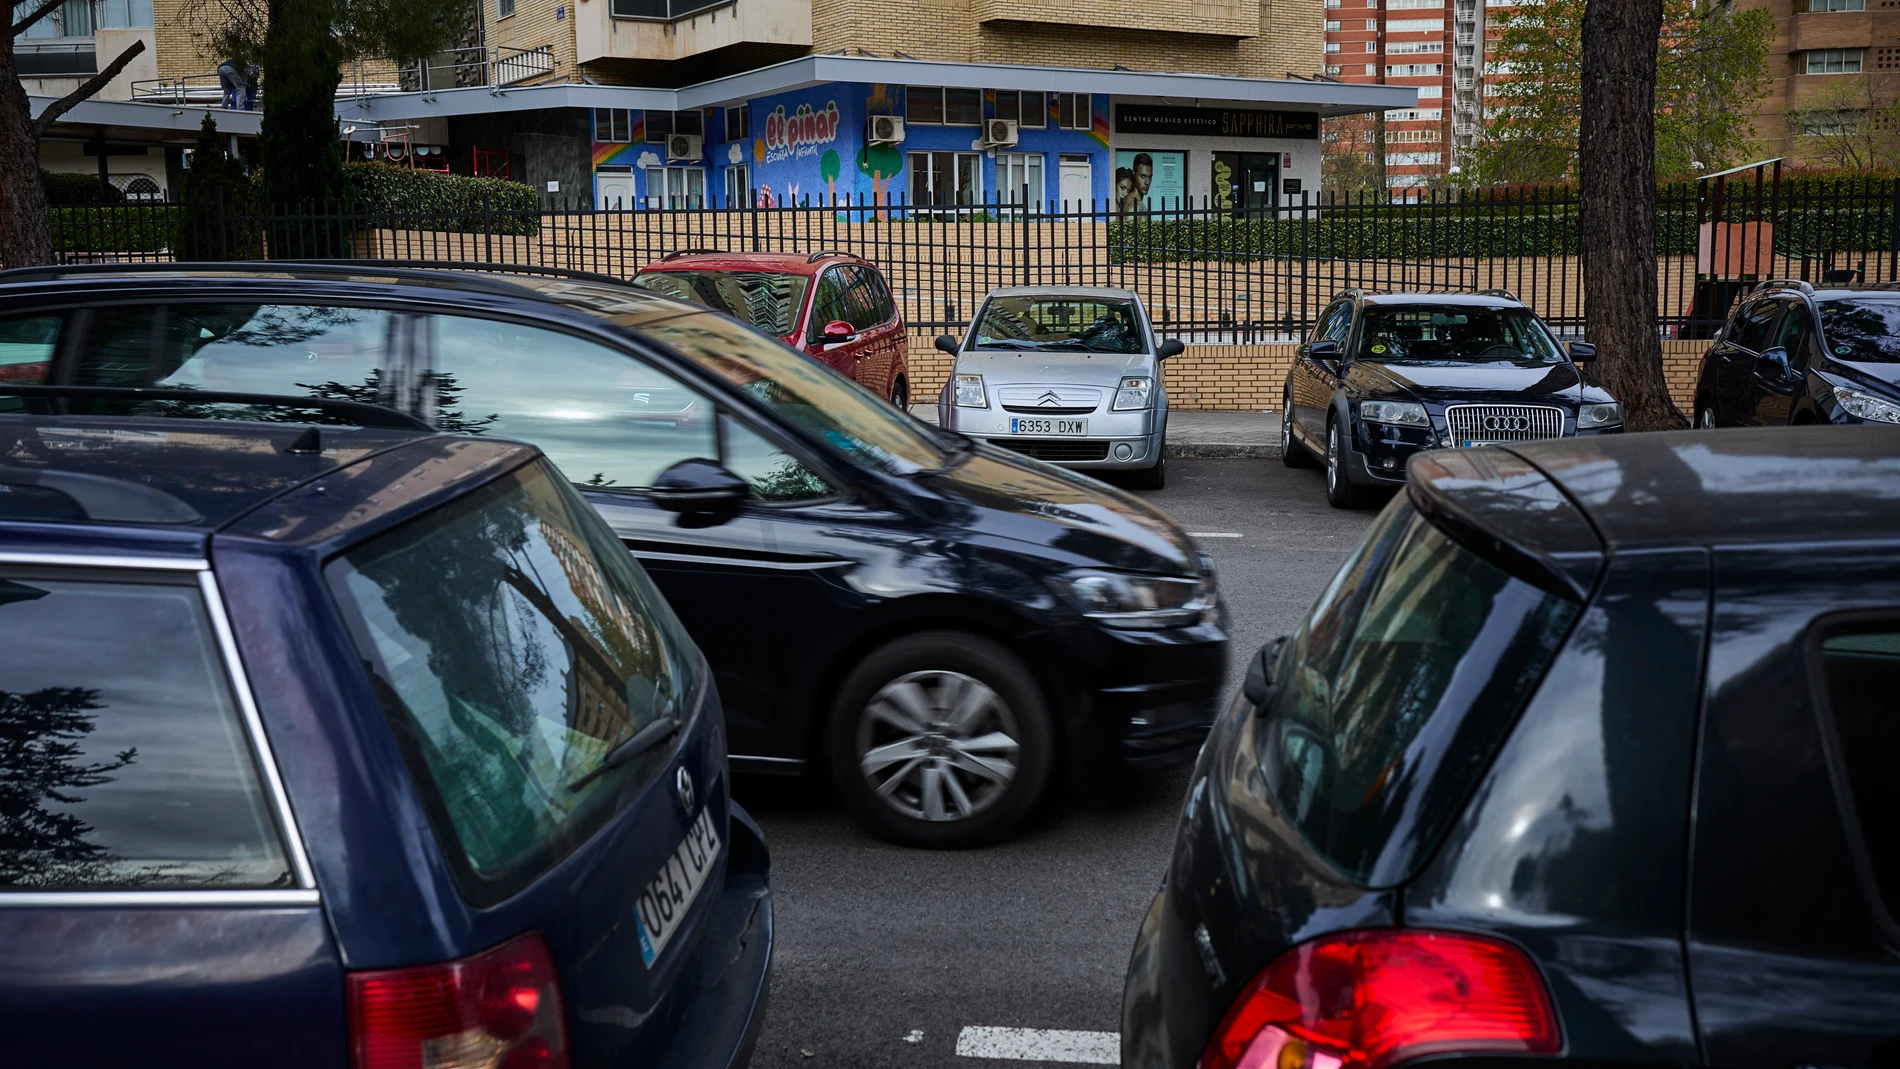 Familias llevan a sus hijos a la escuela infantil El Pinar donde se han producido robos en los coches aparcados en doble fila en las ultimas semanas © Alberto R. Roldán / La Razón